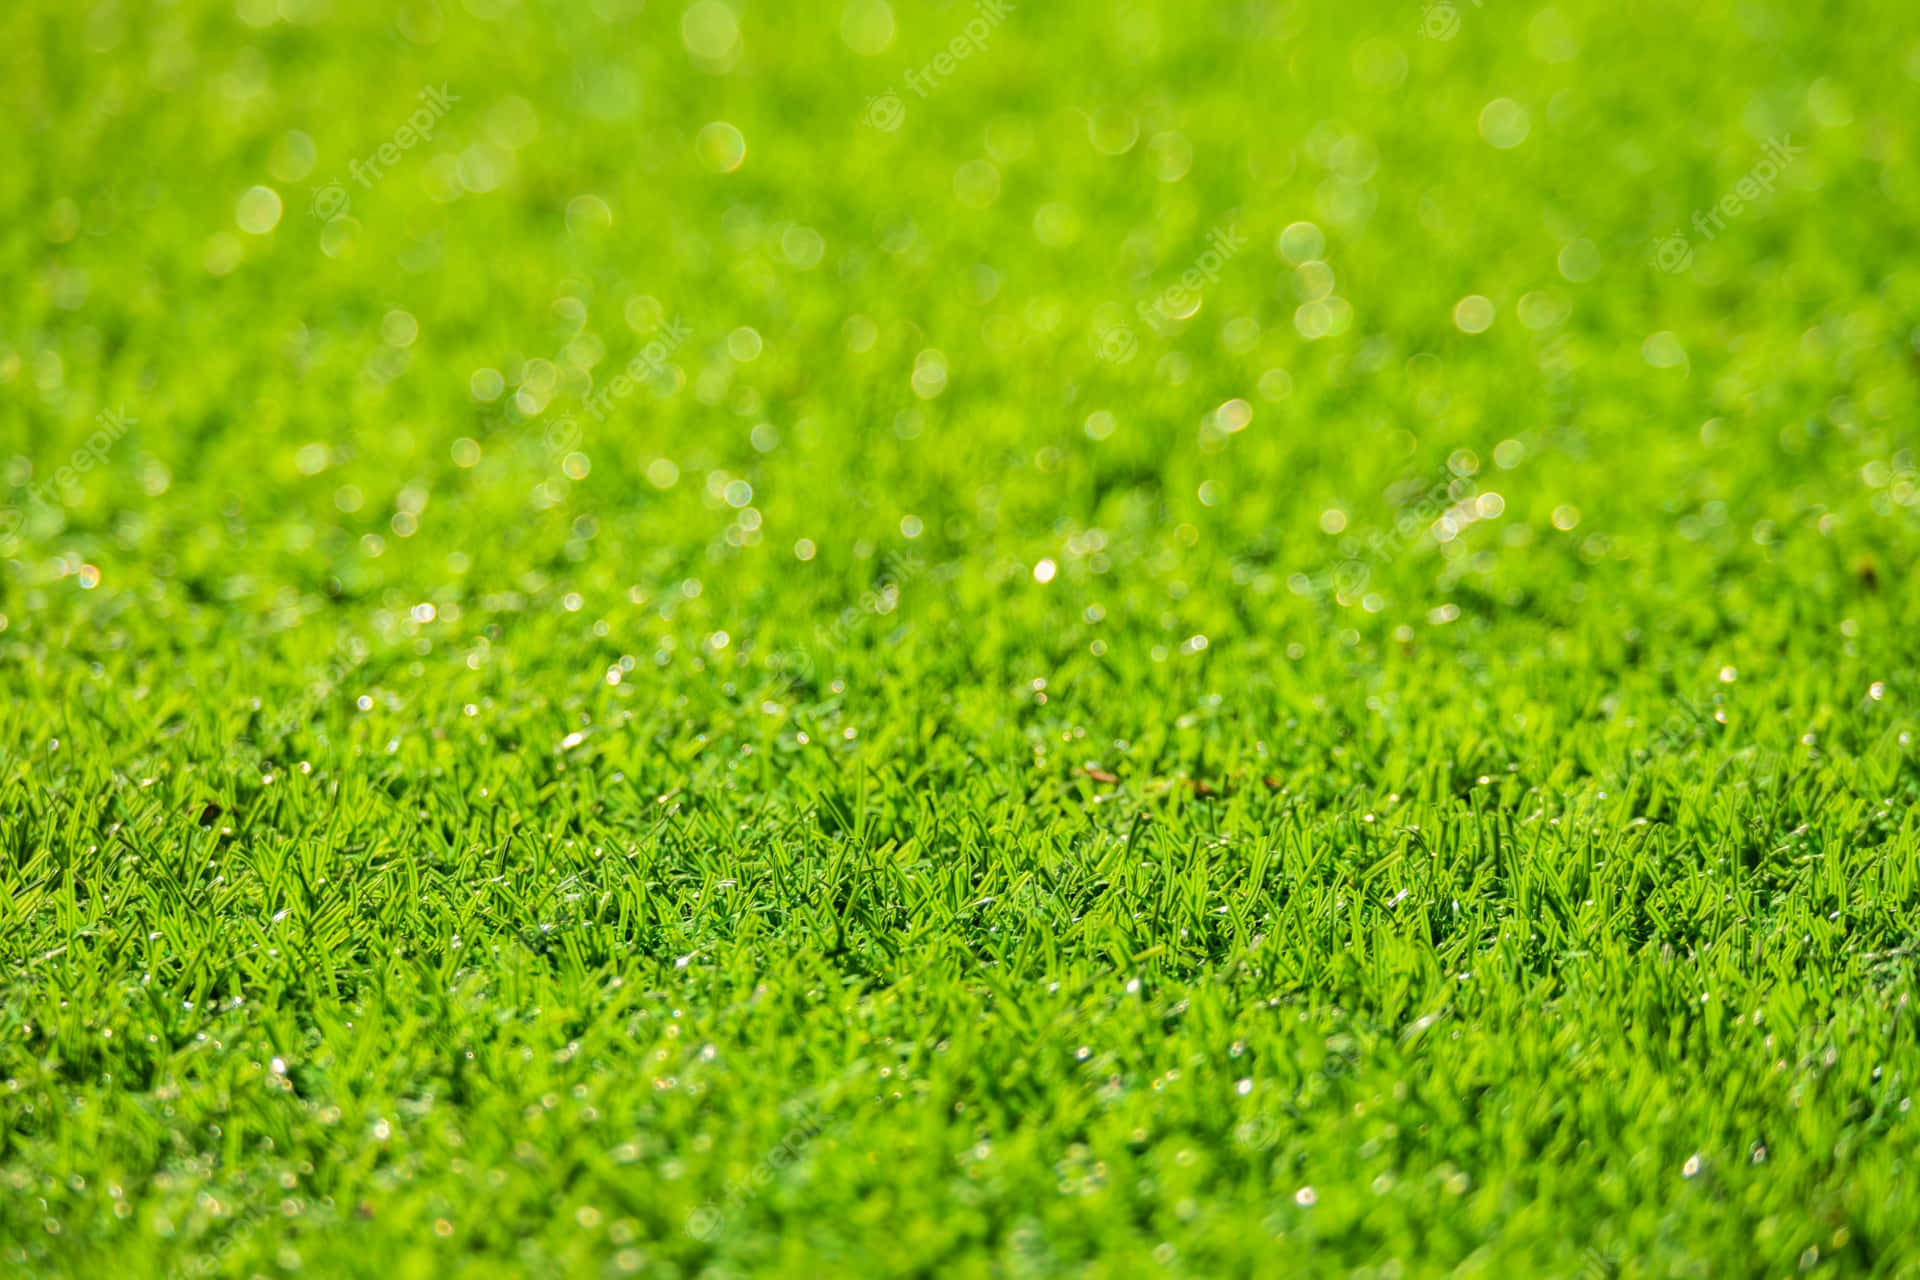 Imagenun Exuberante Campo De Hierba Verde En Un Soleado Día De Verano.